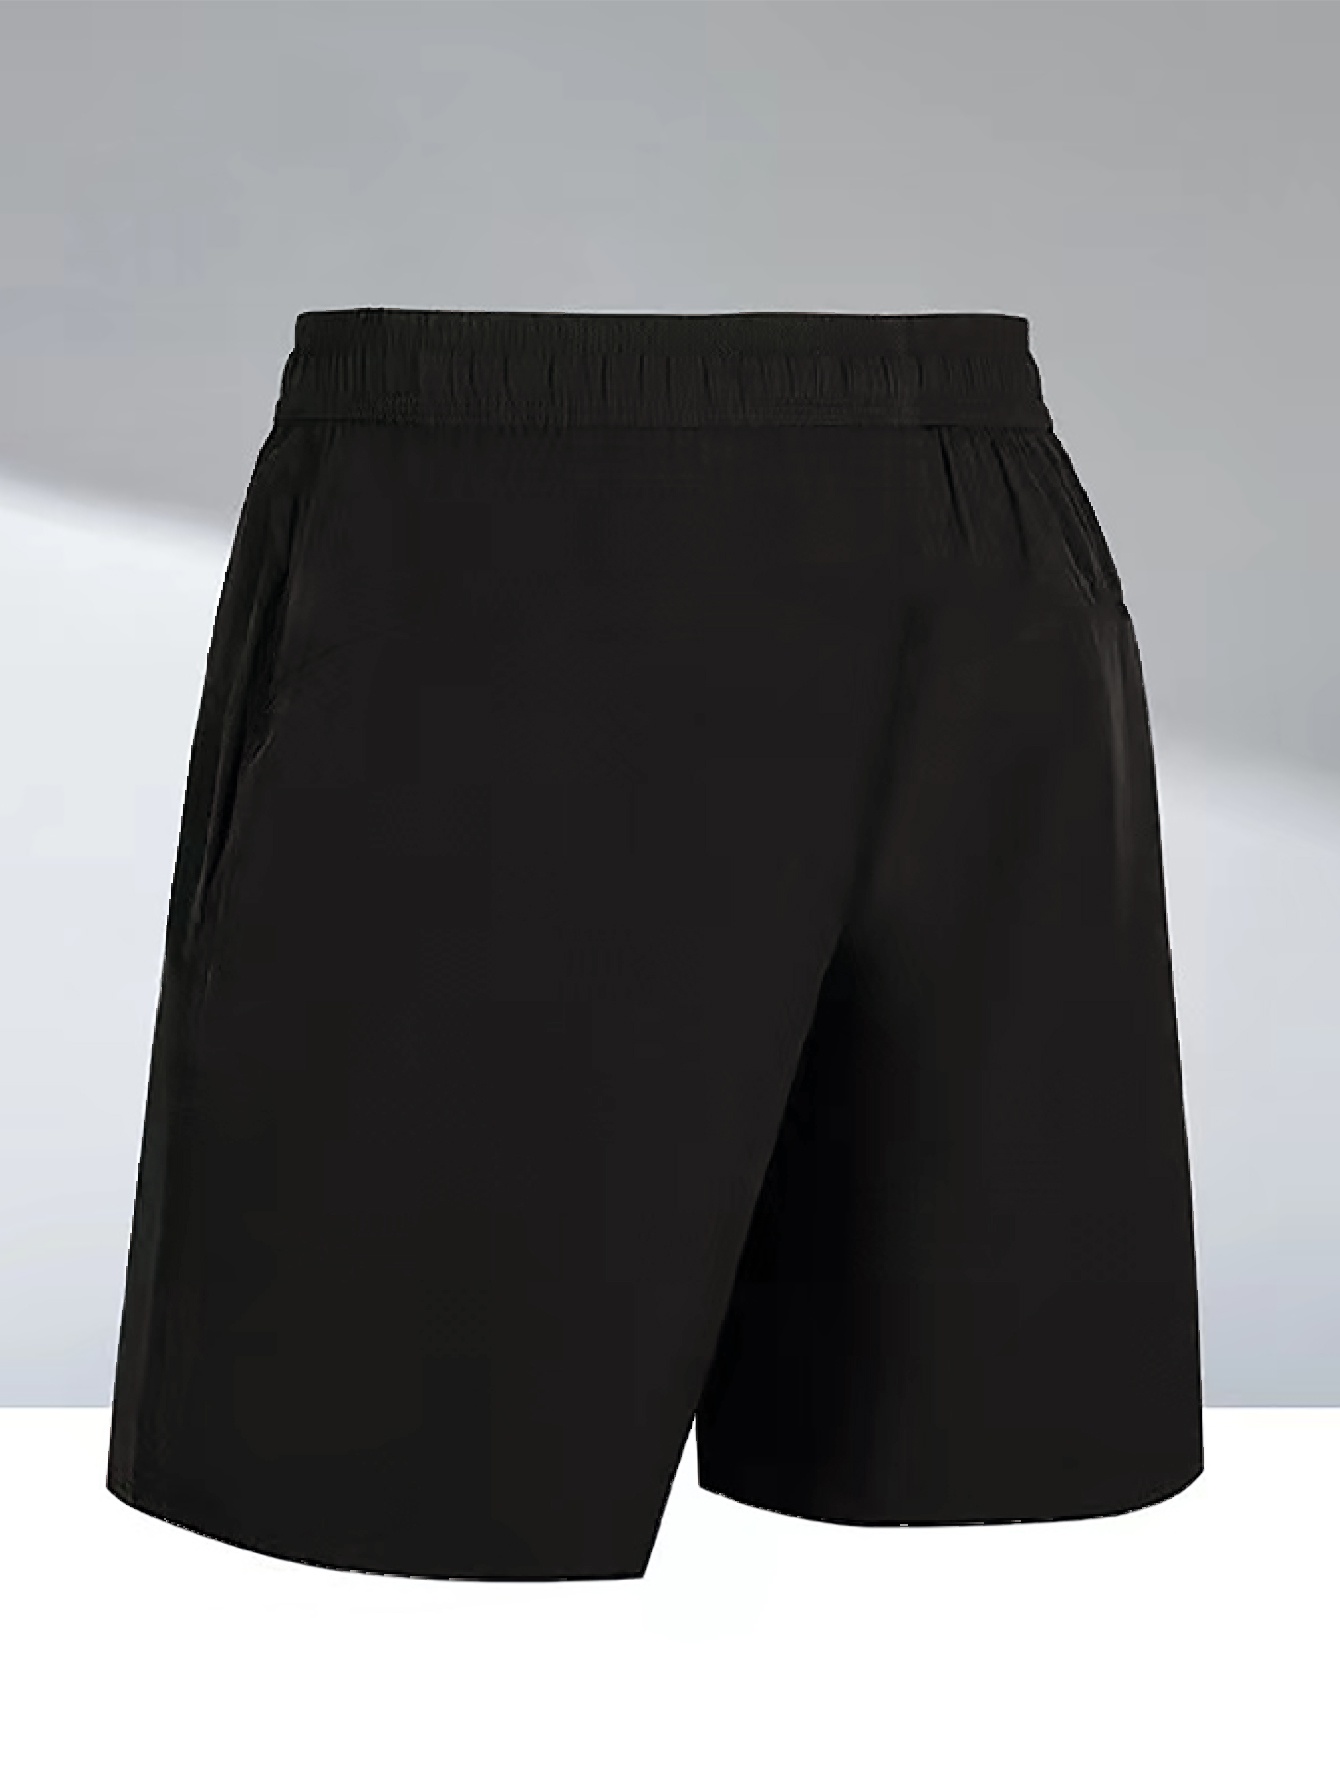 Nike Dri-Fit T-Shirt/Shorts Set Black